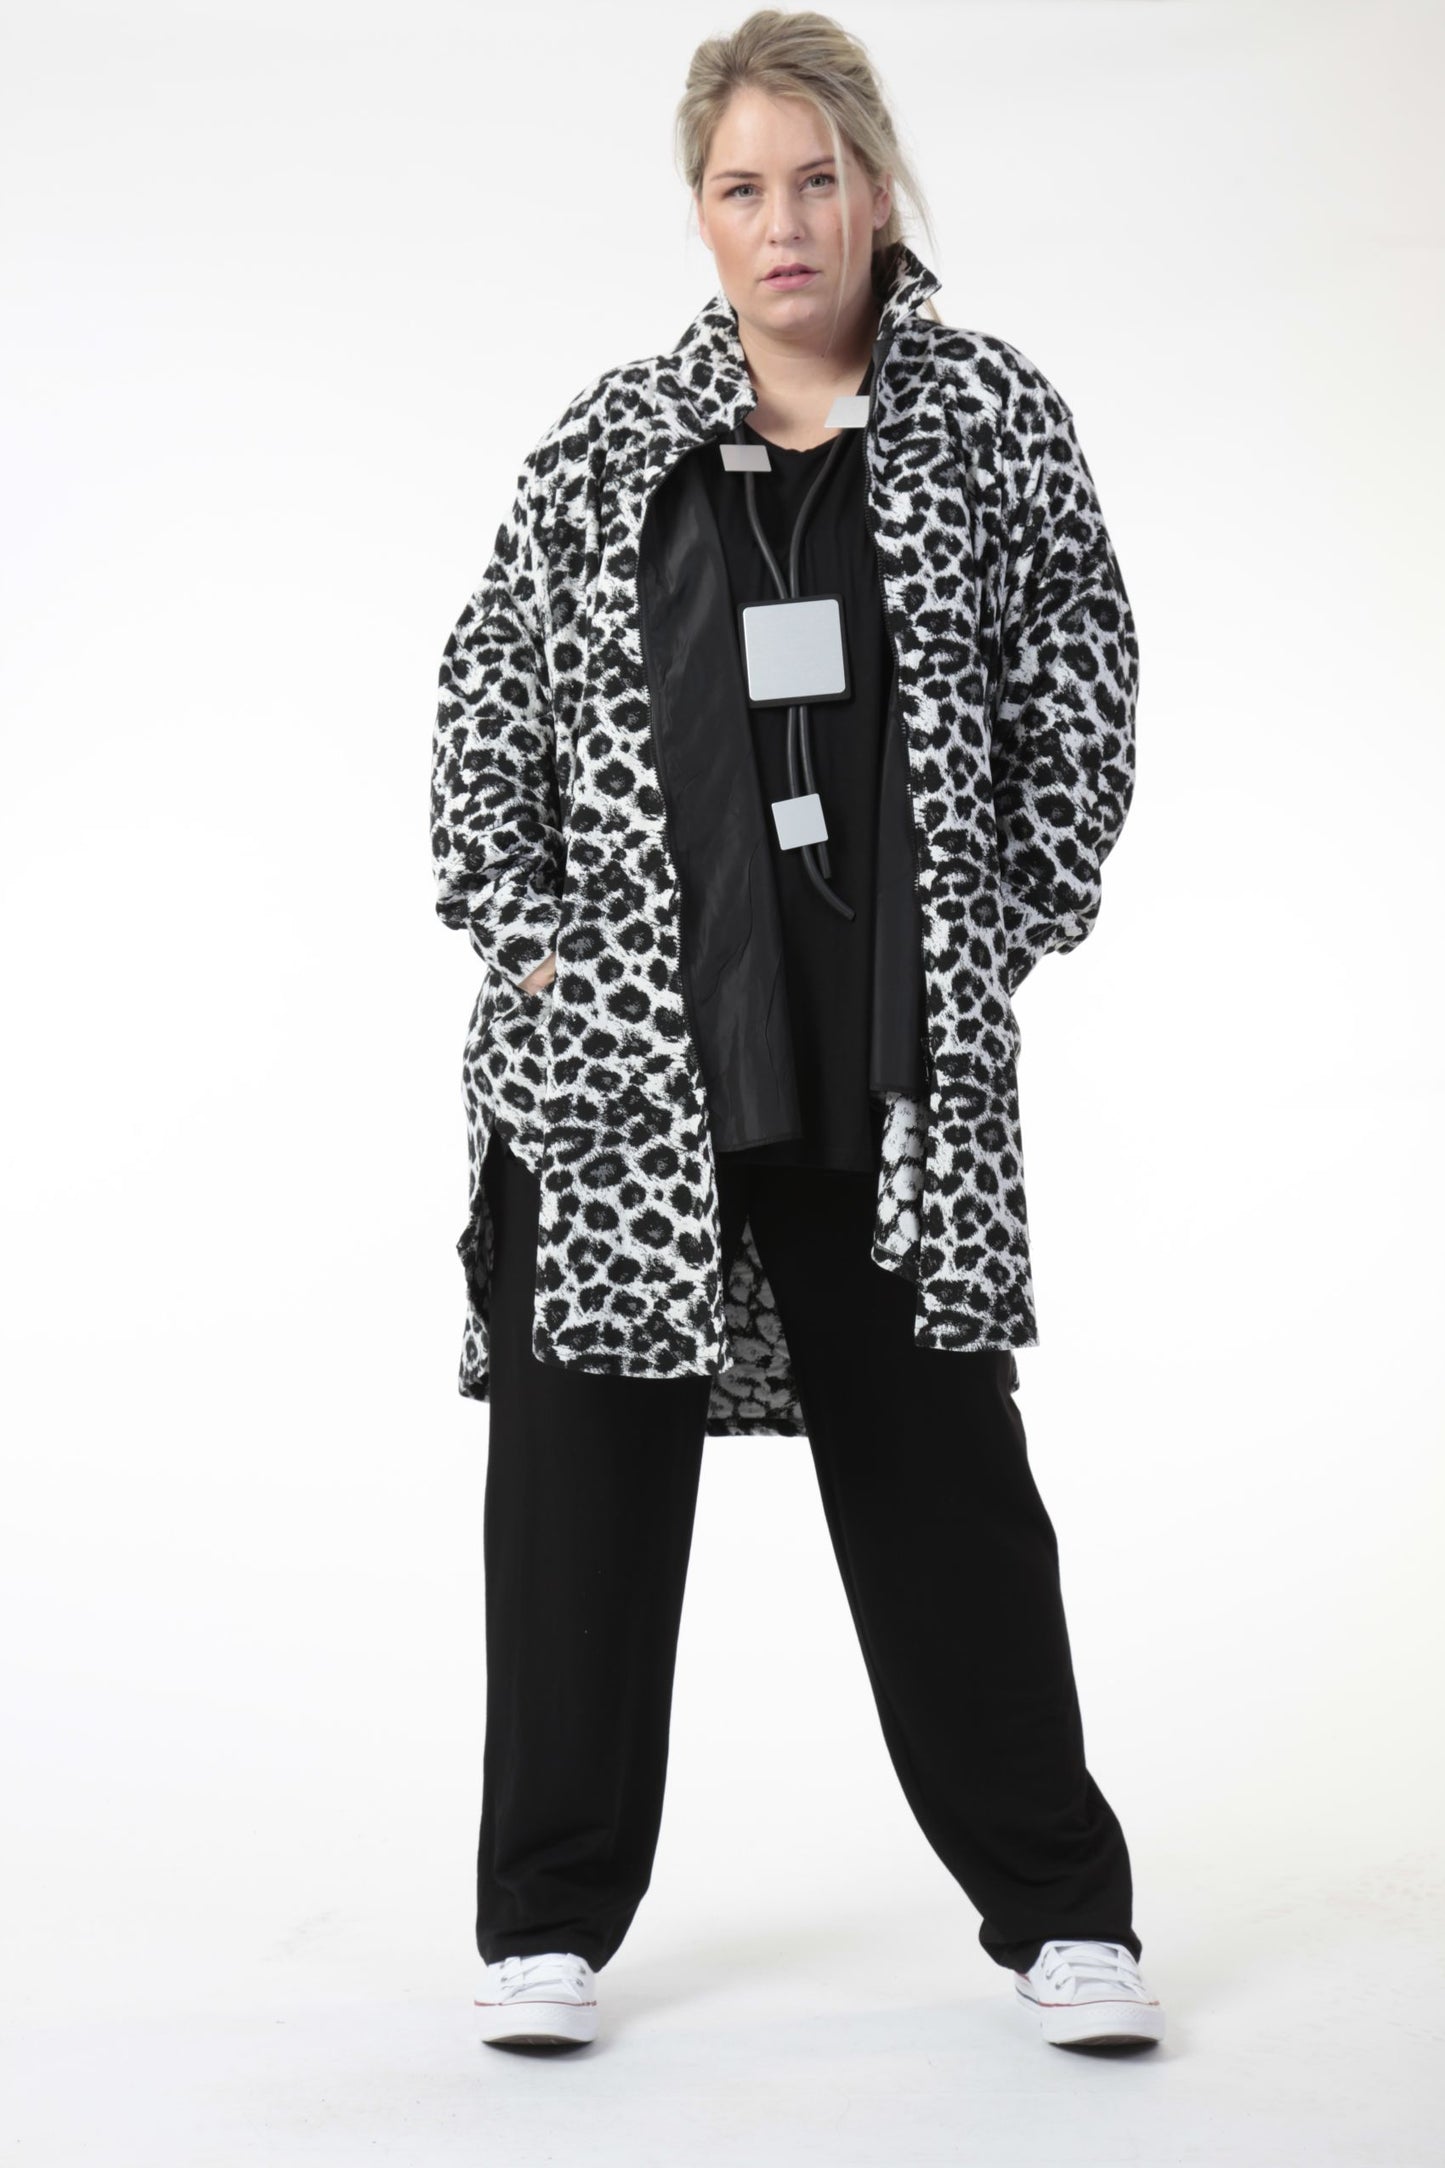 Winter Jacke in gerundeter Form aus er Jacquard Qualität, Zima-Leo in Schwarz-Weiß